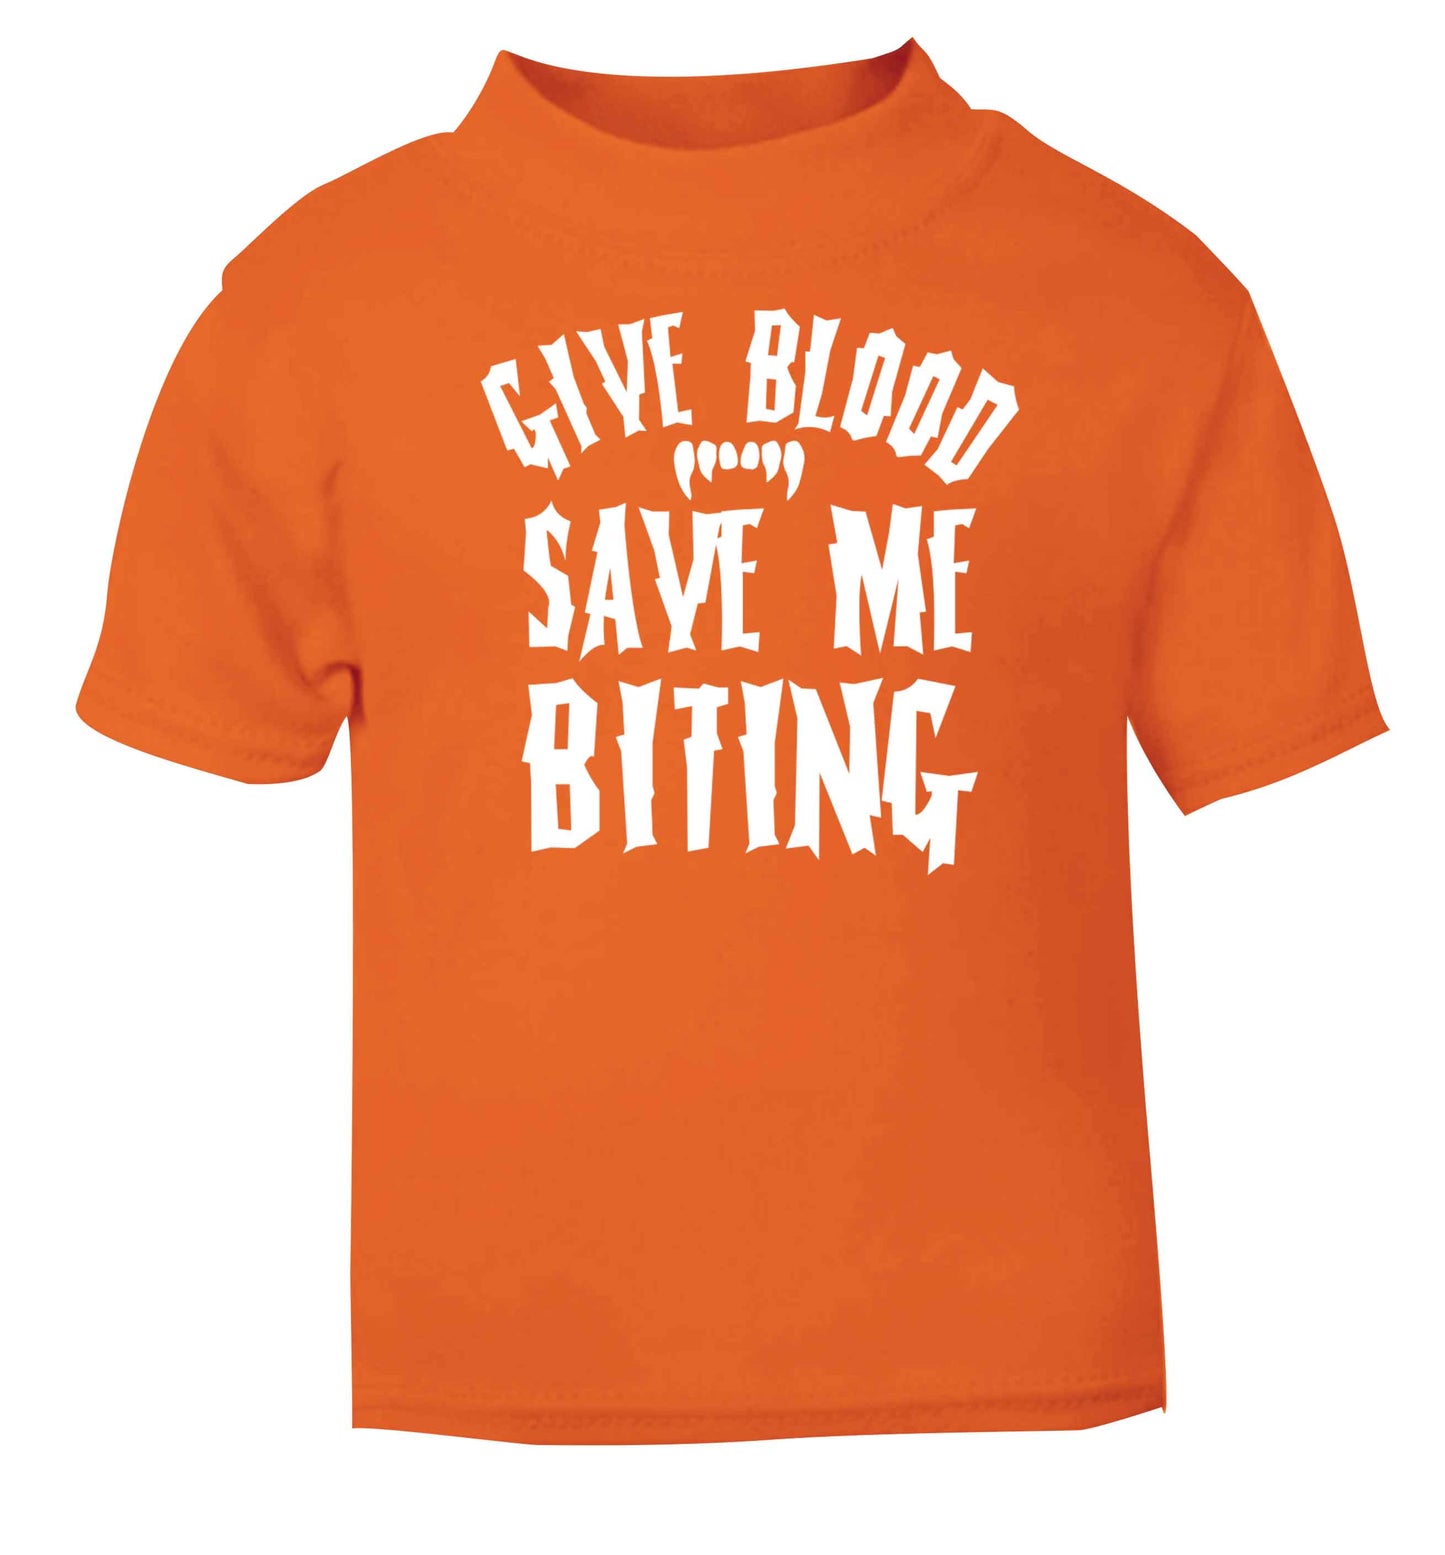 Give blood save me biting orange baby toddler Tshirt 2 Years